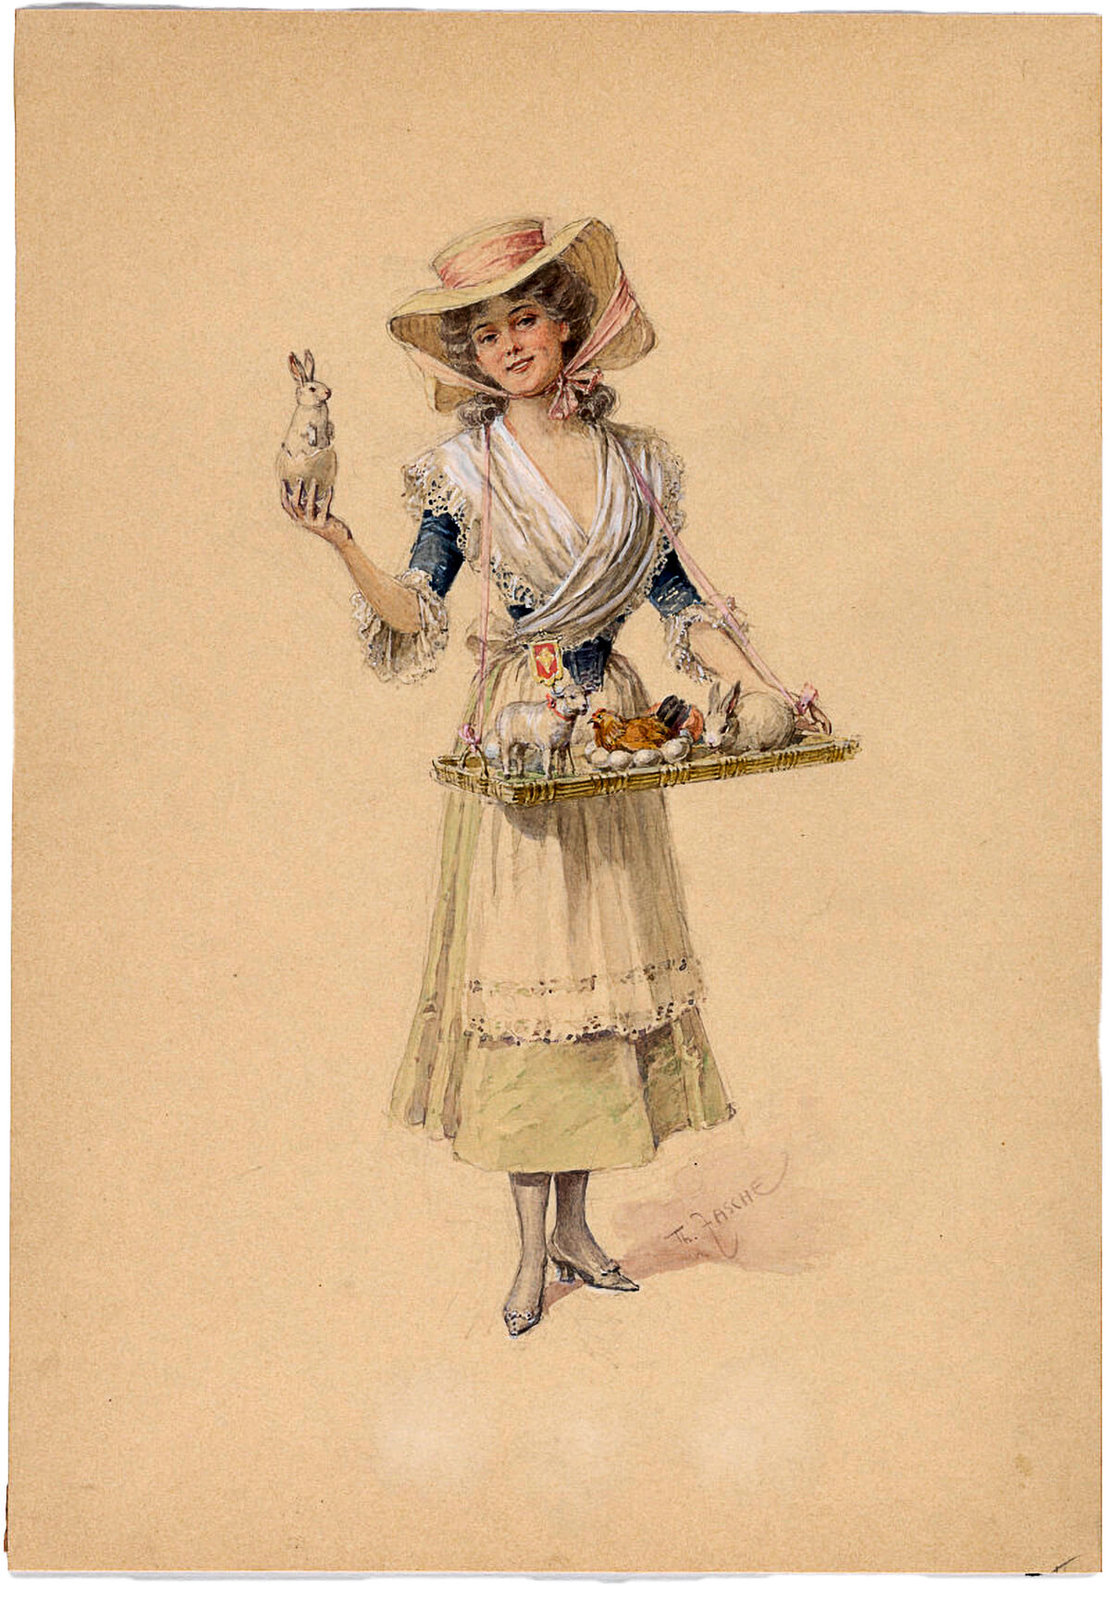 Verkäuferin mit Osterwaren, Aquarell von Theodor Zasche, um 1900, Sammlung Wien Museum 